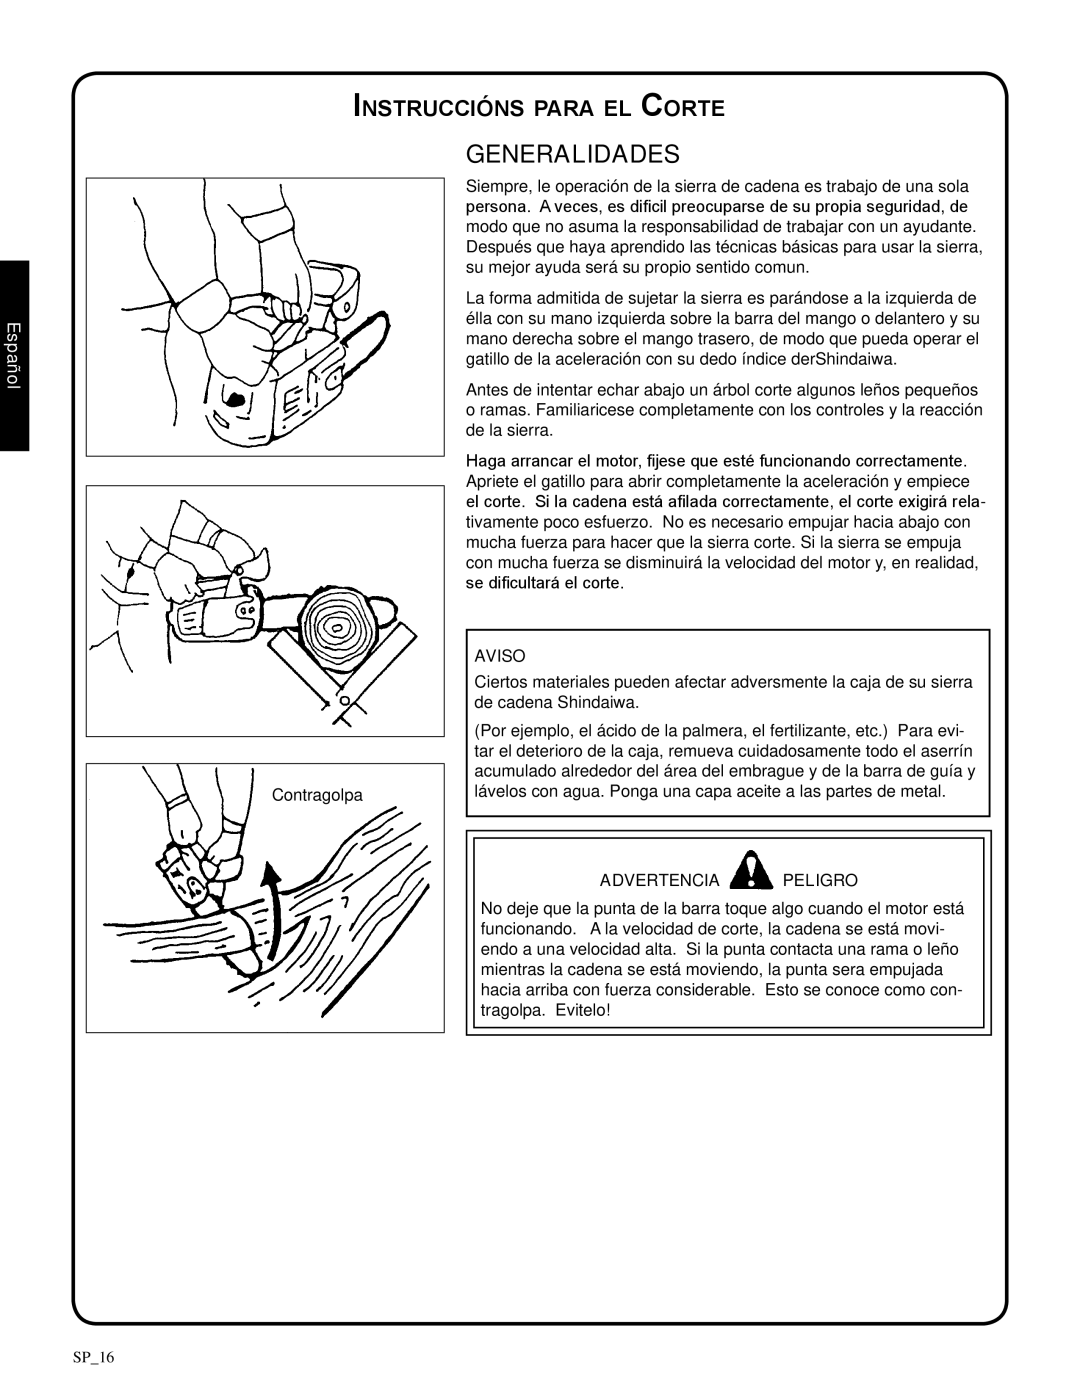 Shindaiwa 82085, 326T manual Generalidades, Instruccións para el Corte, Aviso, Español, Advertencia Peligro 